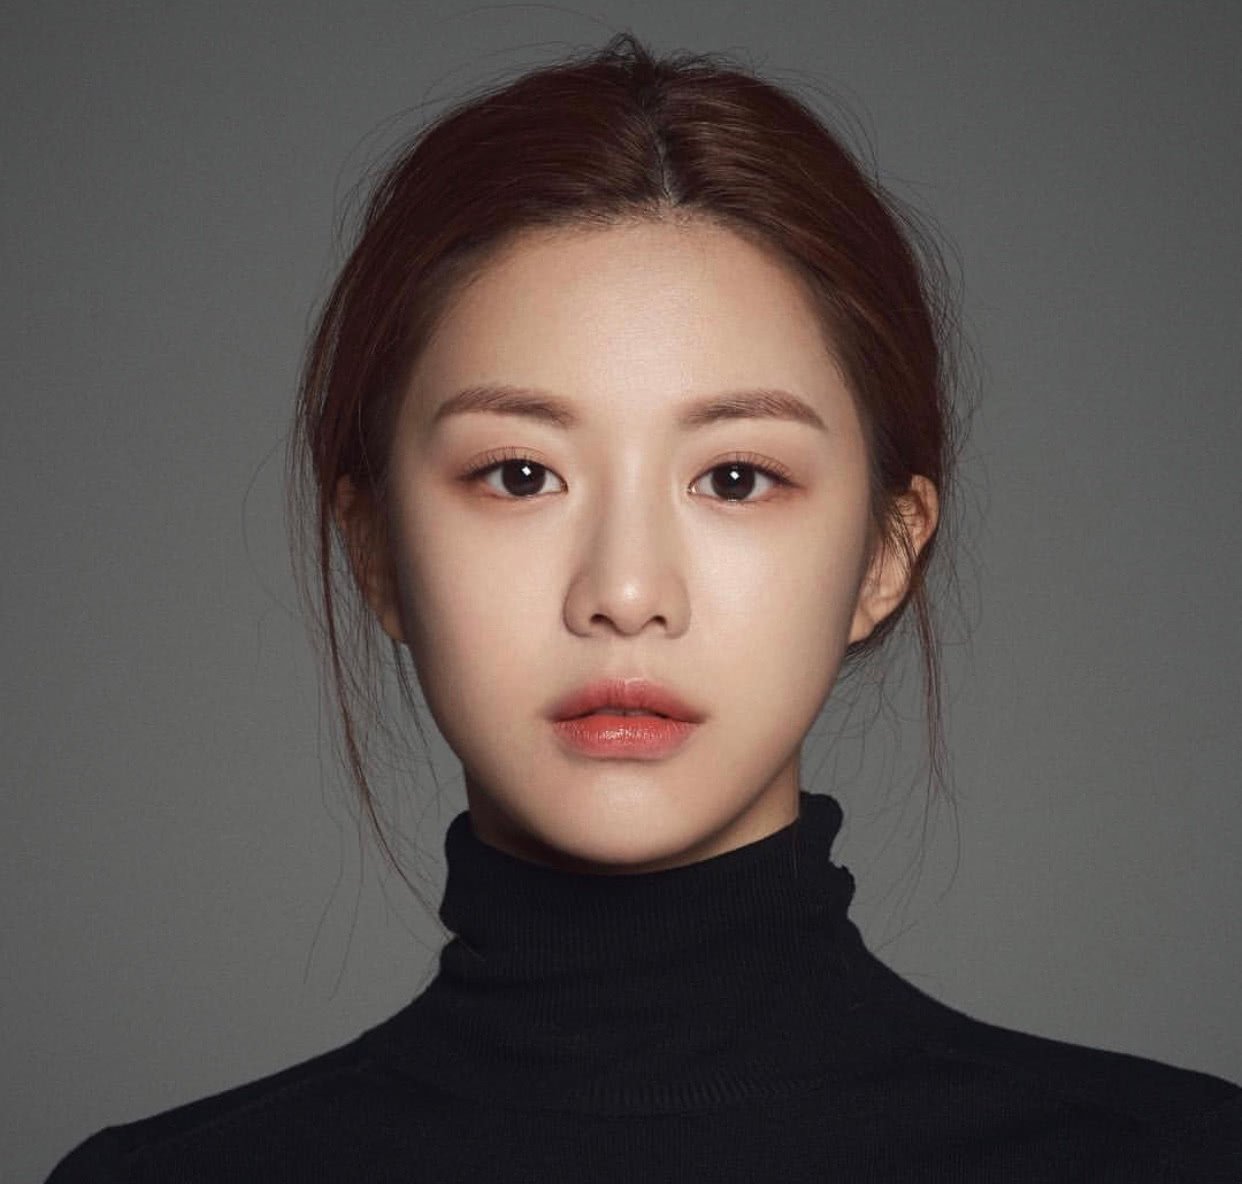 韩国最新整容模板,看过她学生时代照片后崩溃